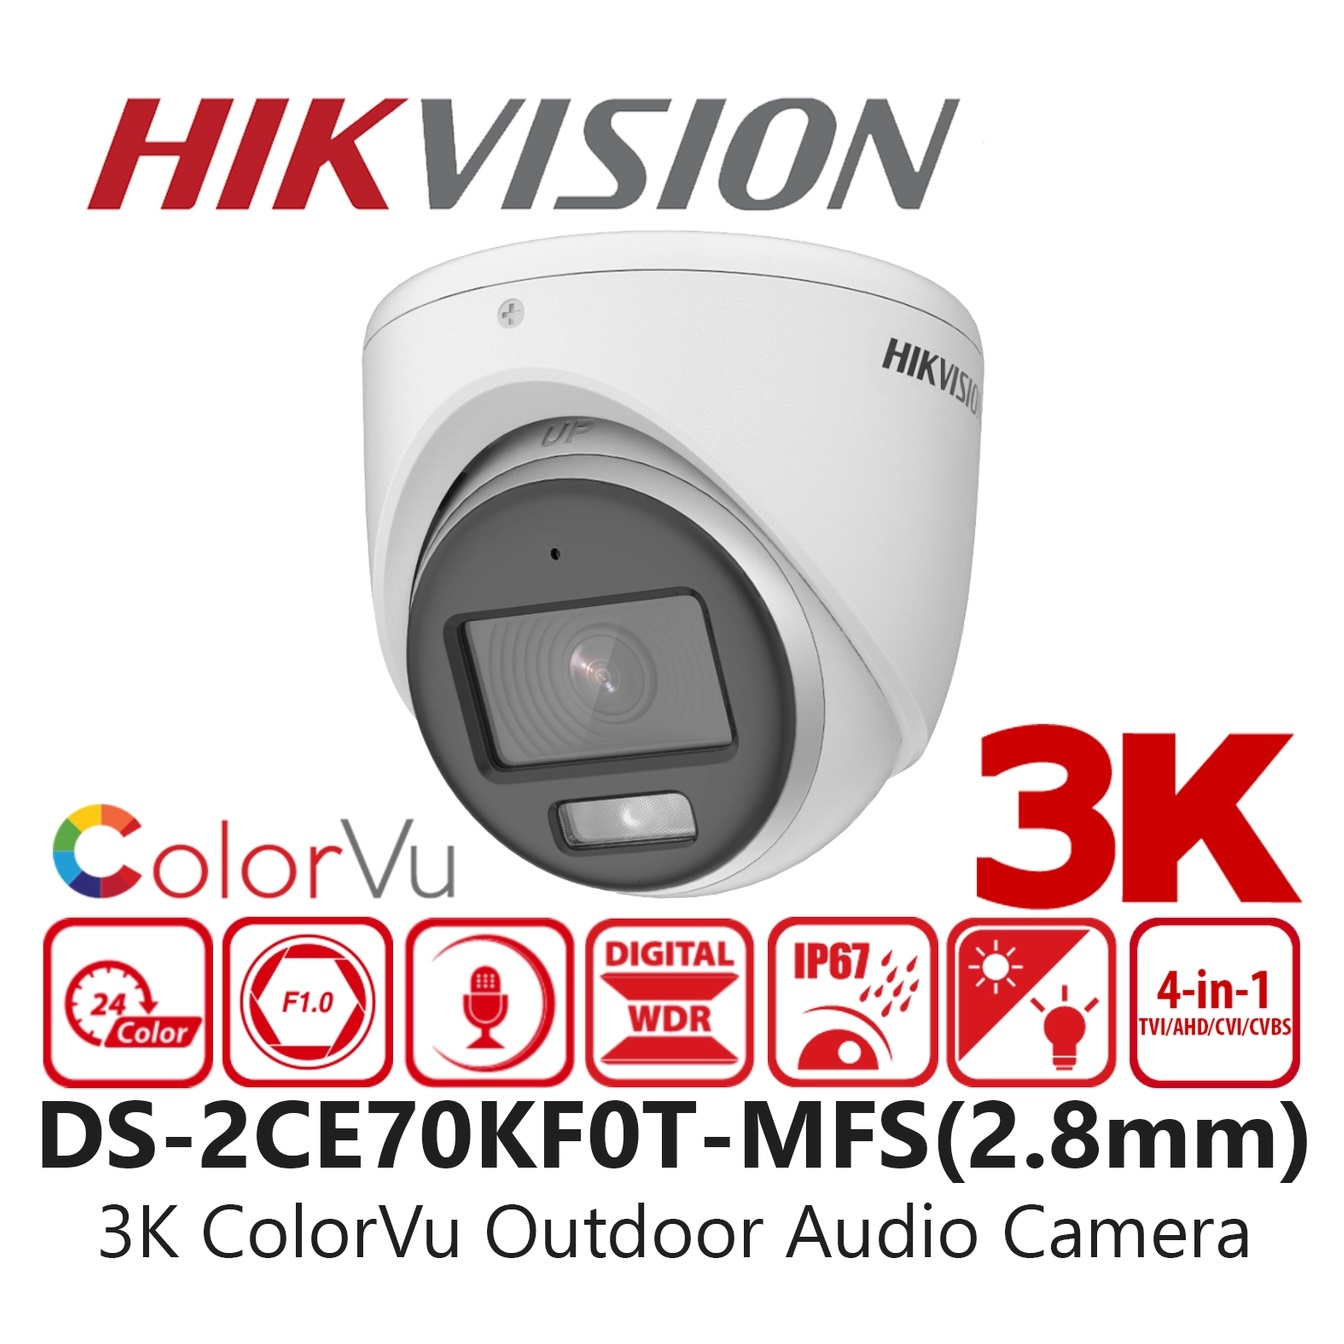 Sistema Cctv Hikvision colorvu Kit 5MP Audio de color de la noche Construido en Micrófono Kit de cámara 